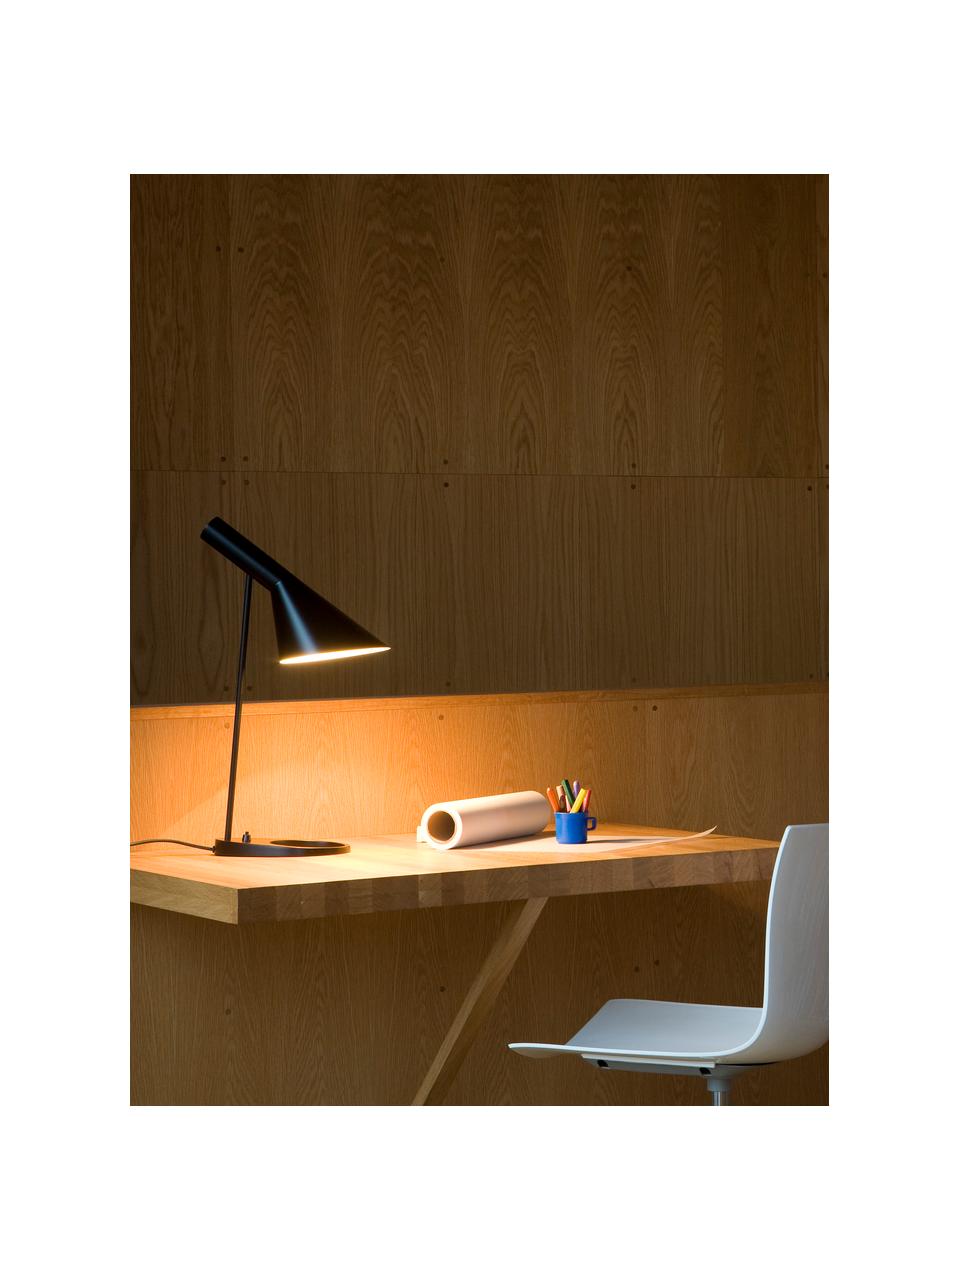 Lampe de bureau AJ, tailles variées, Noir, larg. 25 x haut. 43 cm